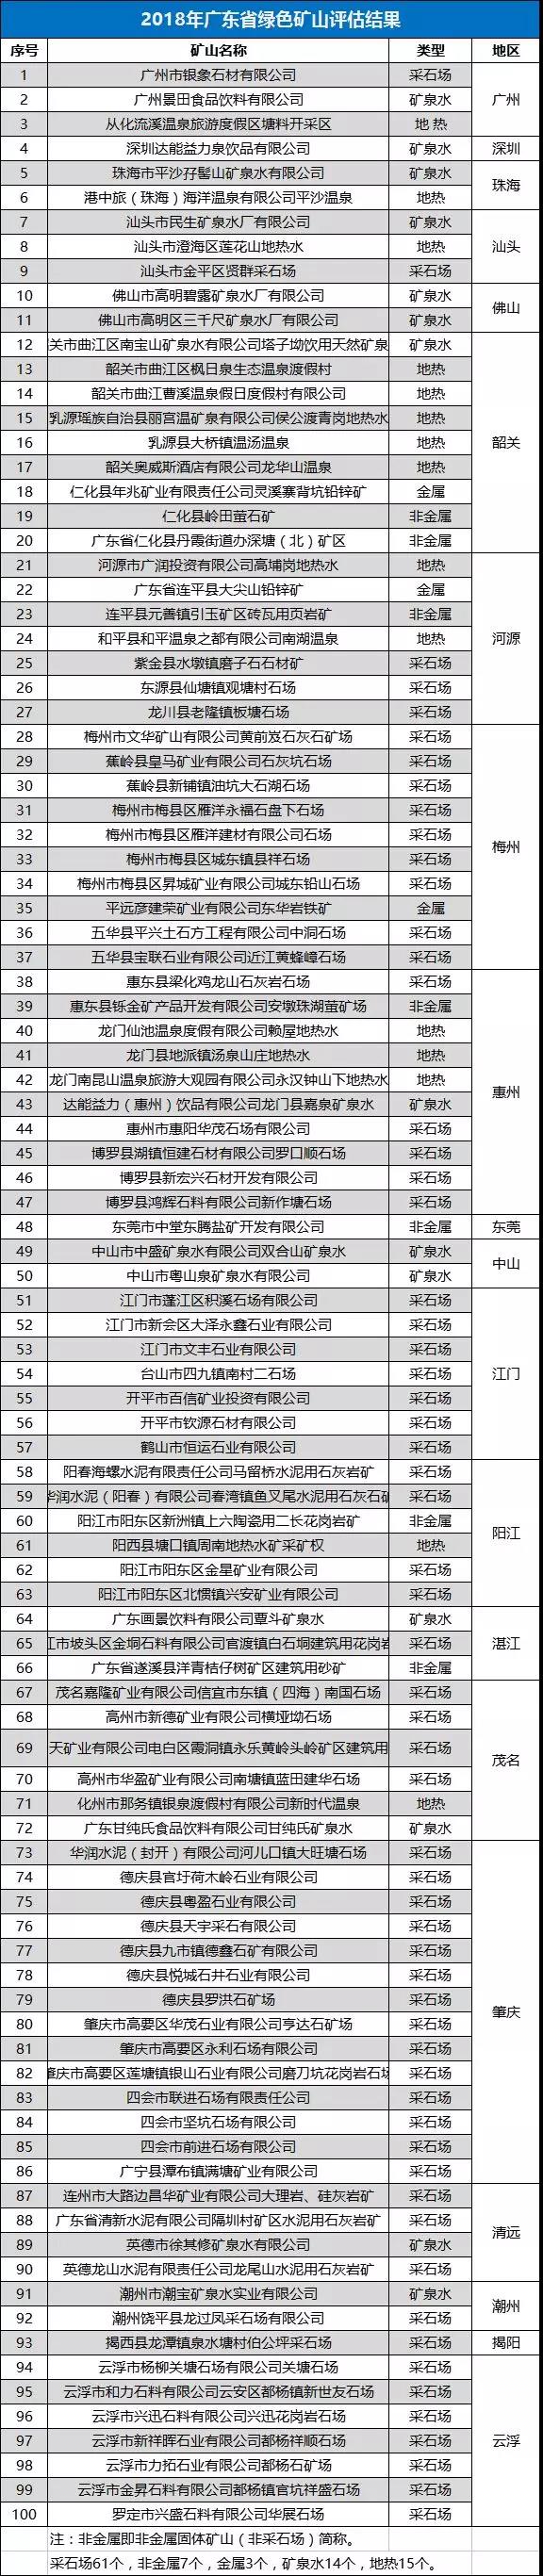 2018年广东省绿色矿山评估结果